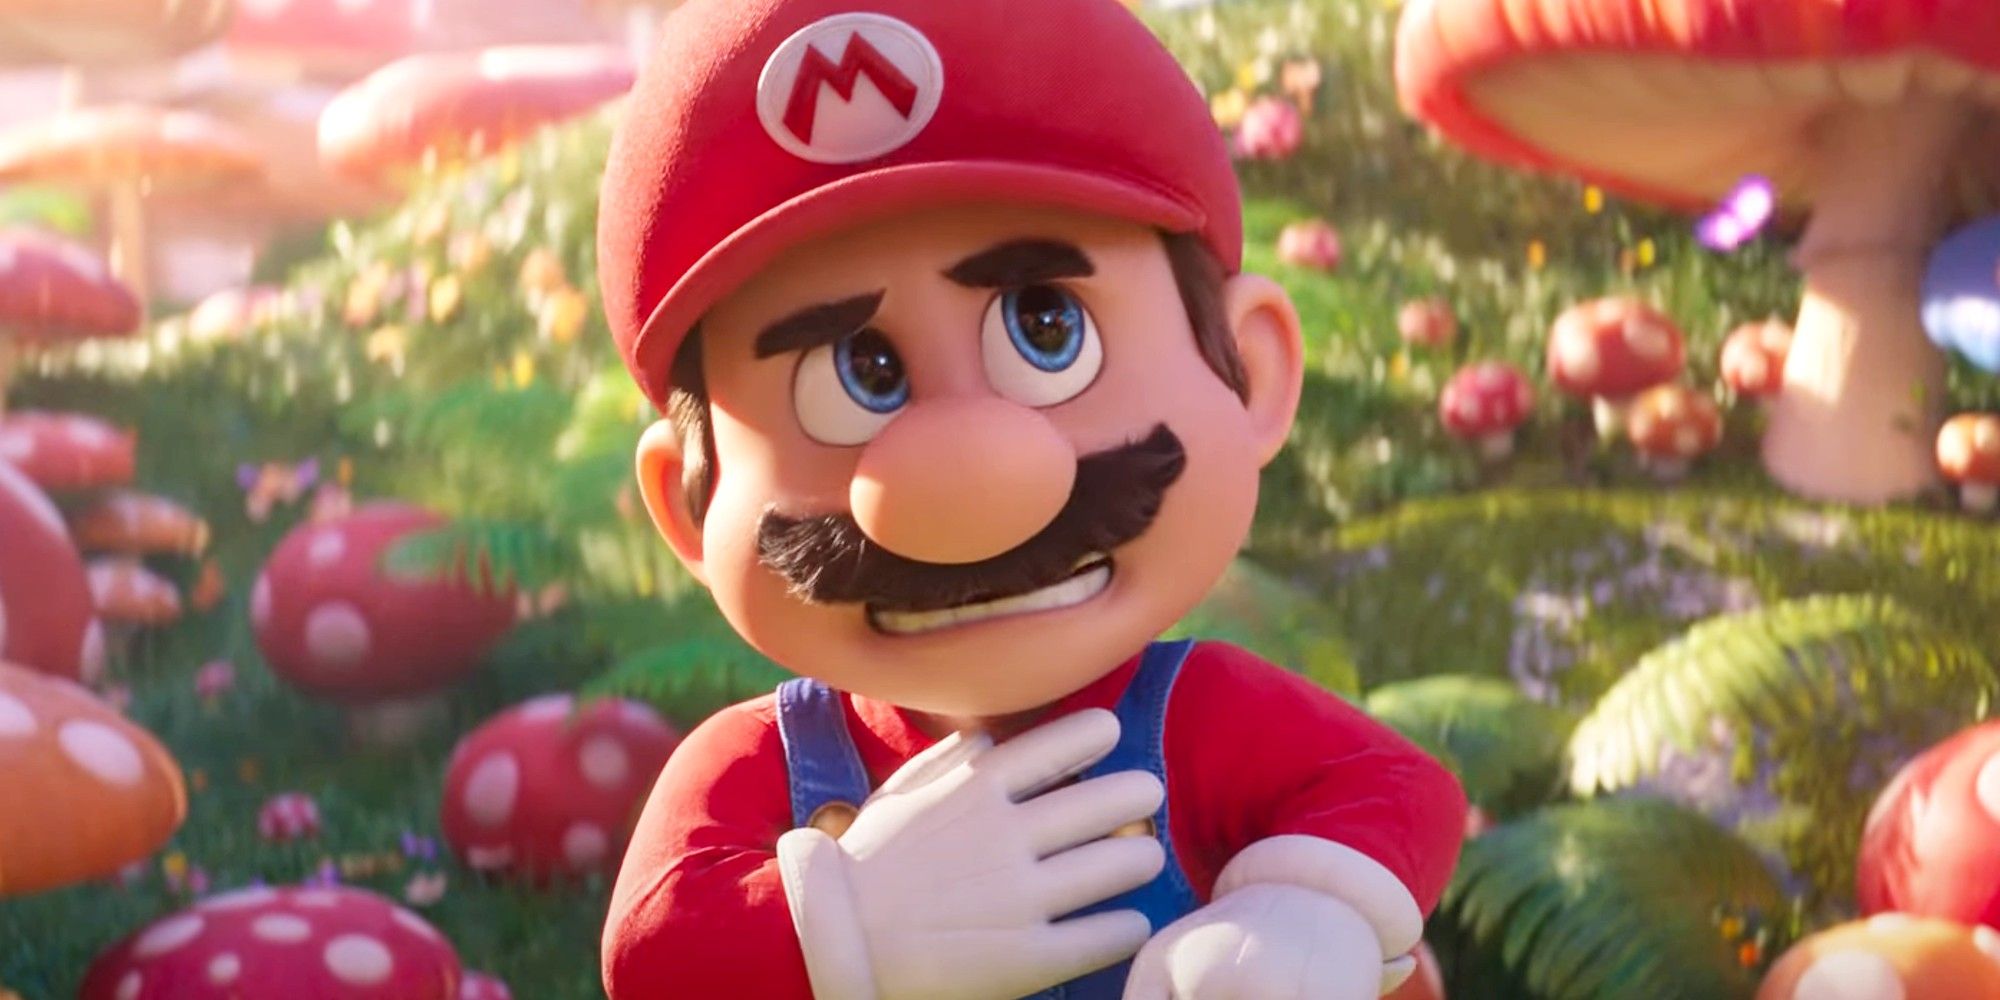 Iluminação Super Mario Bros. Chris Pratt como Mario